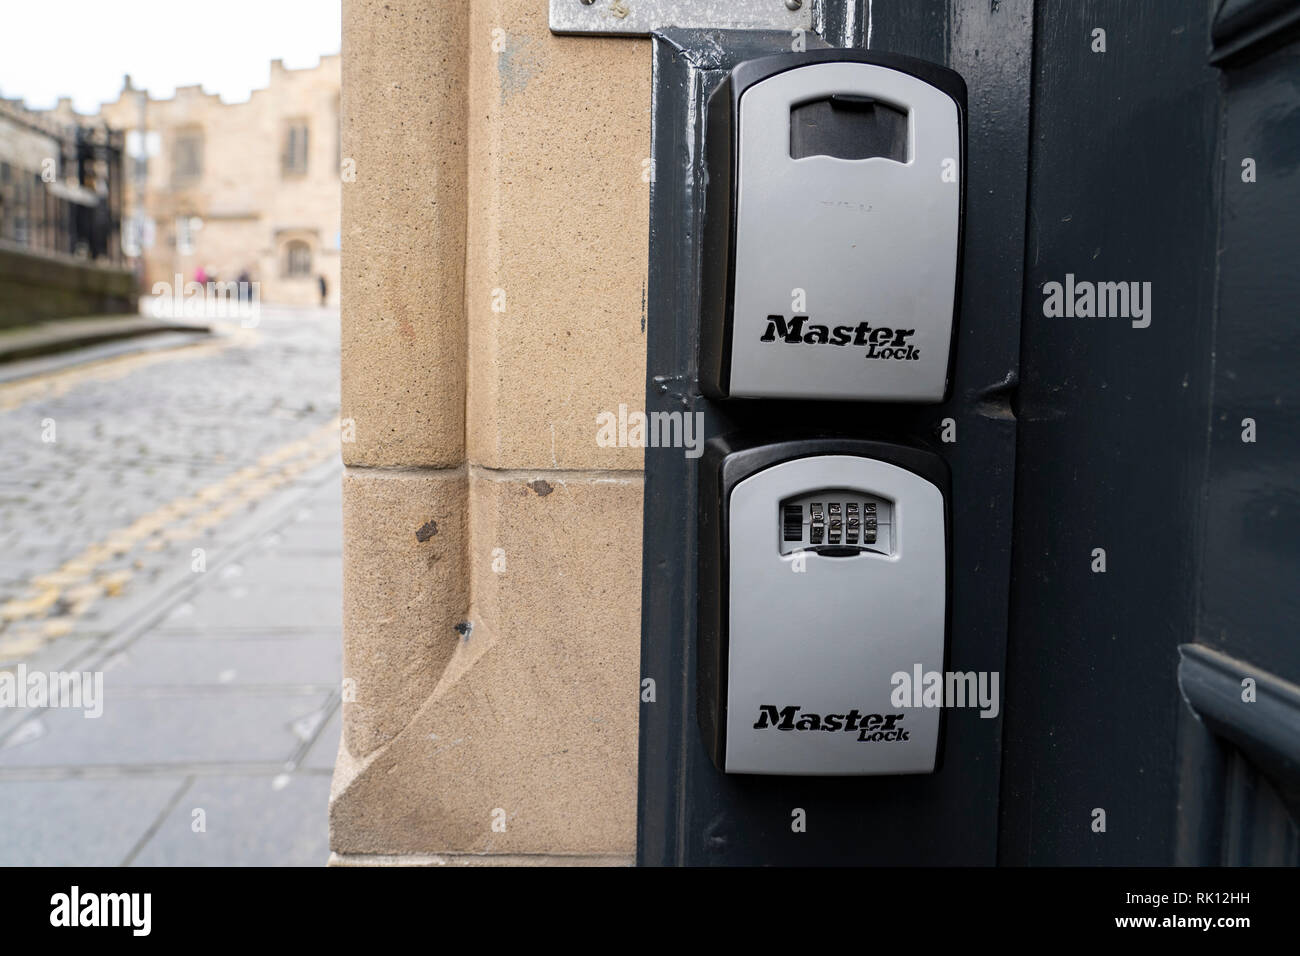 Boîtes pour AirbnB clé réduite d'accéder à porte clefs à l'extérieur immeuble d'appartements dans la vieille ville d'Édimbourg, Écosse, Royaume-Uni Banque D'Images